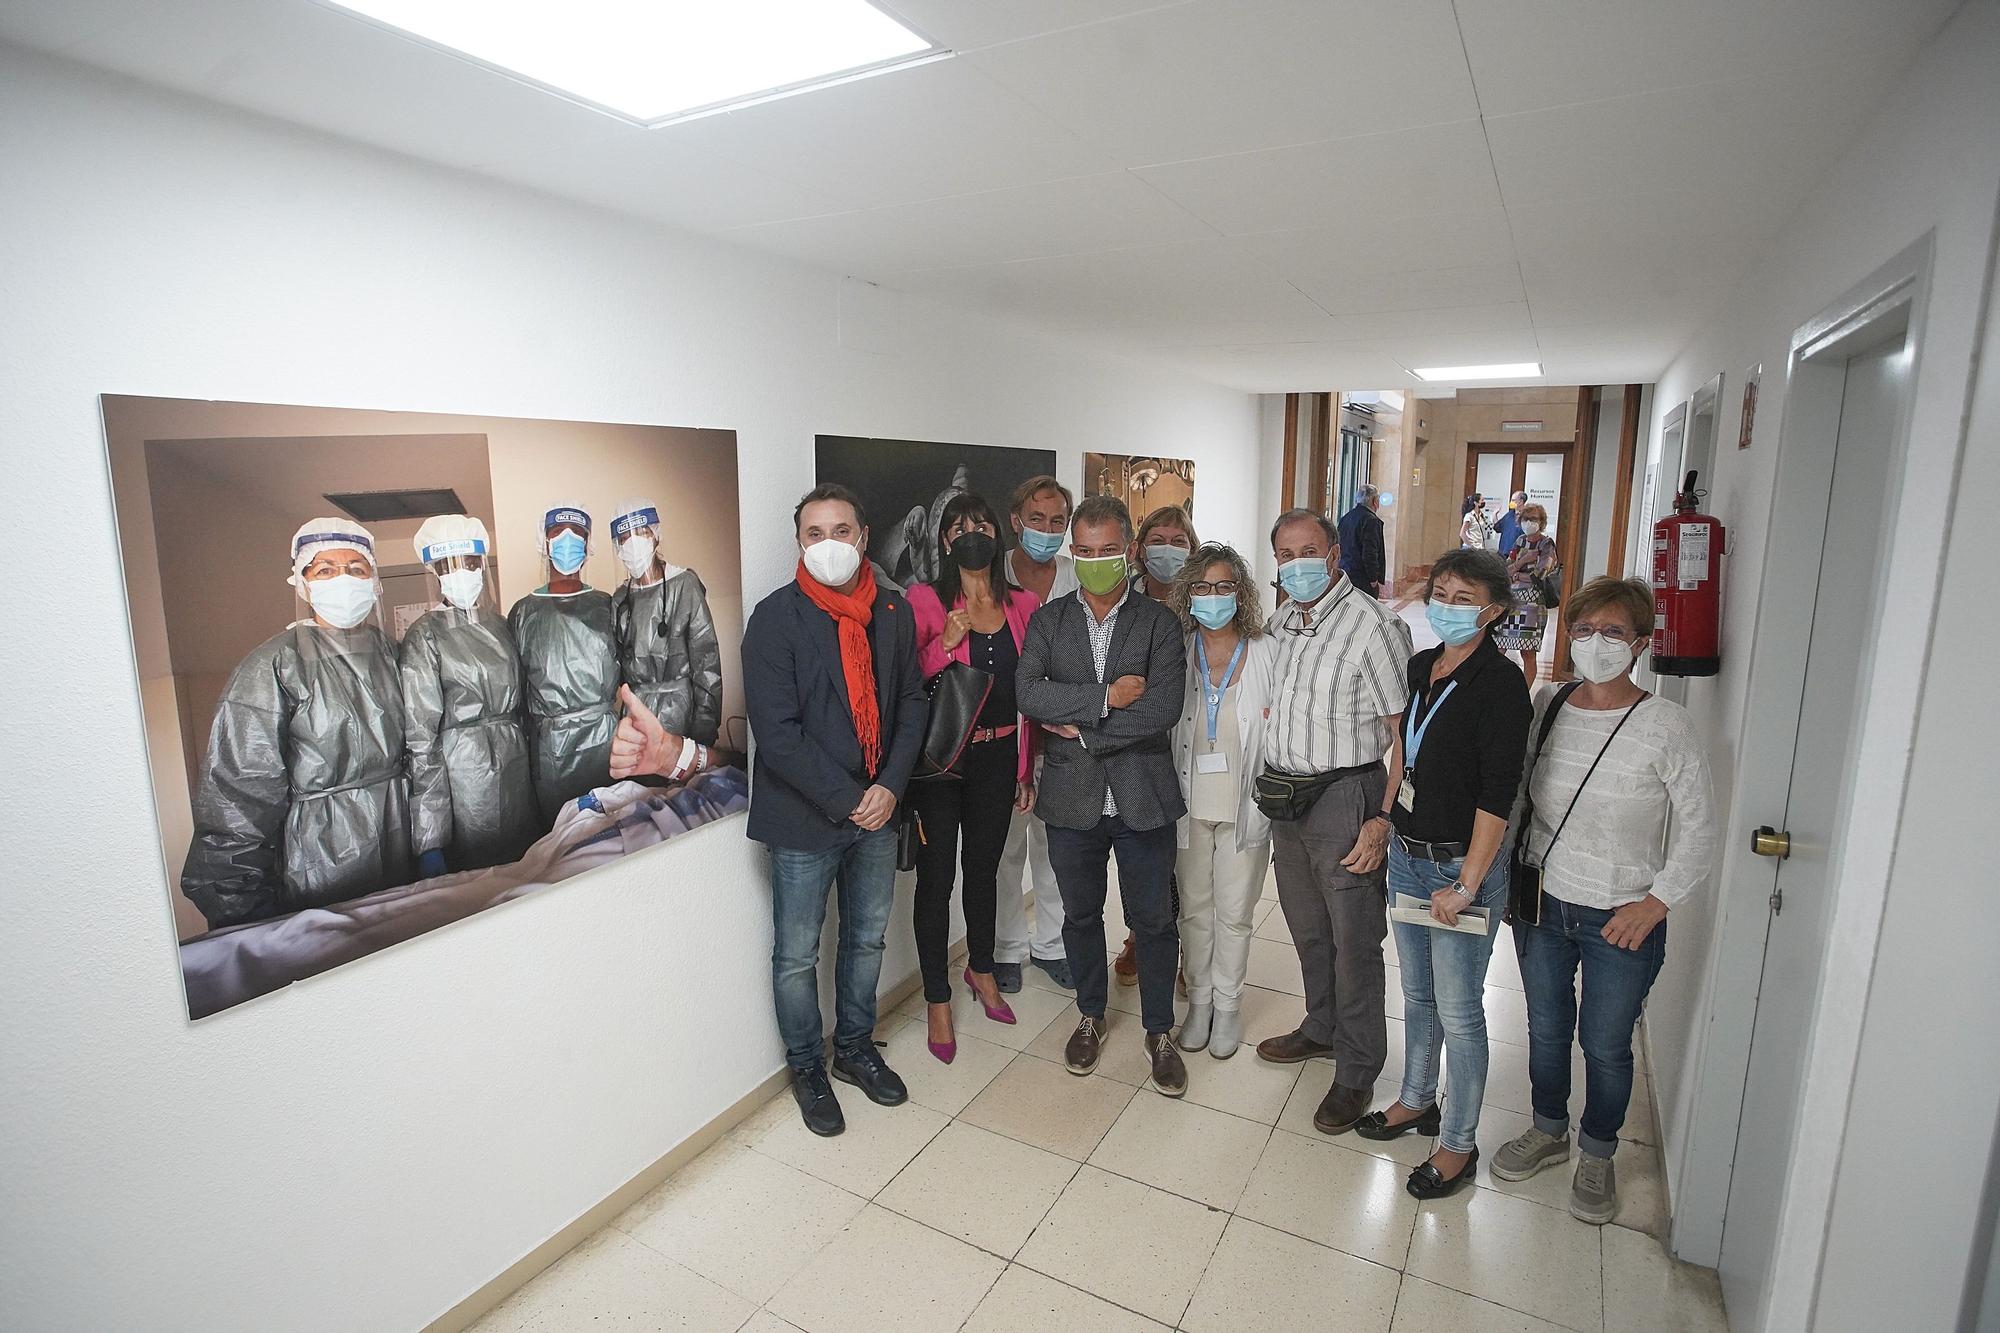 Exposició d'homenatge als sanitaris dels últims 40 anys amb imatge del fotoperiodista Tino Soriano